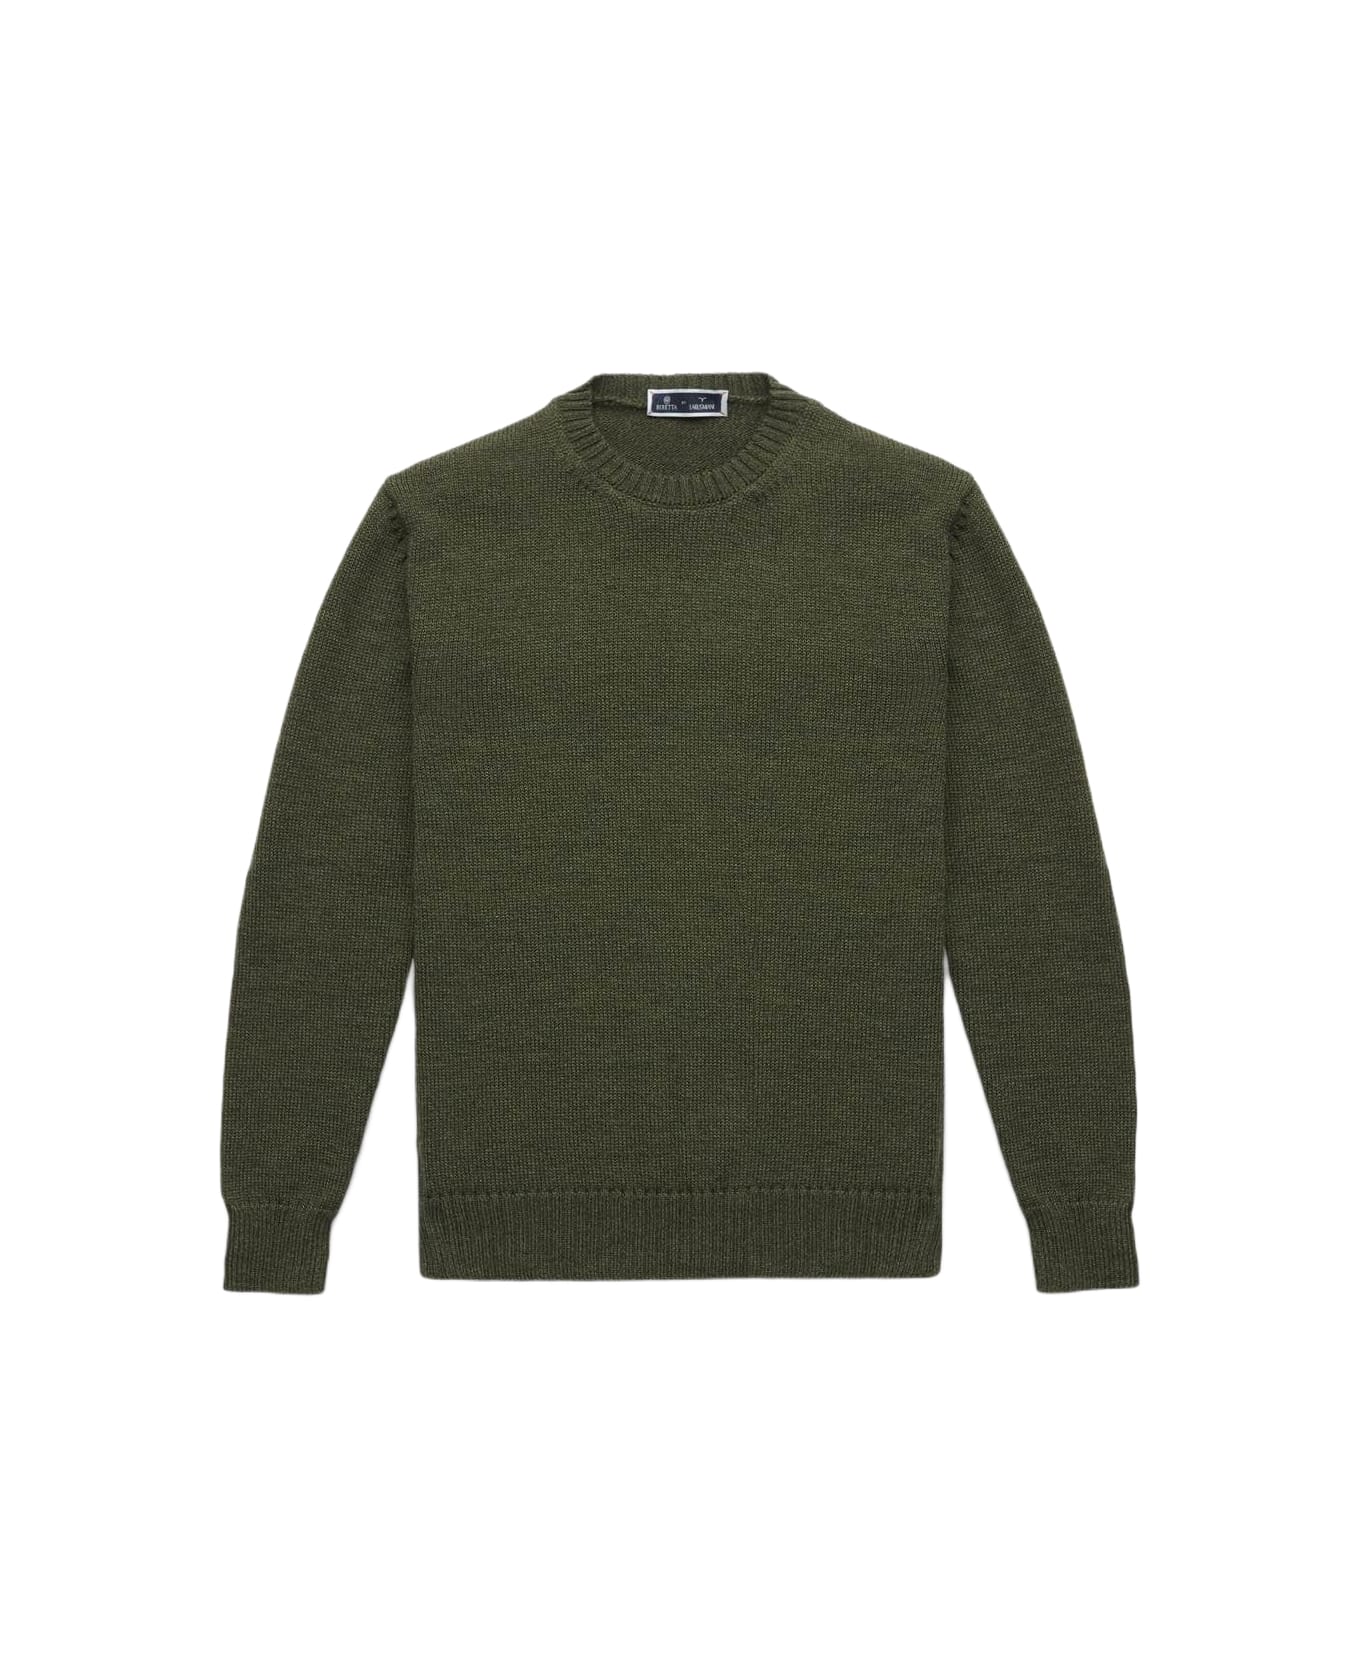 Larusmiani Crew Neck Sweater 'la Cabane' Sweater - Olive ニットウェア